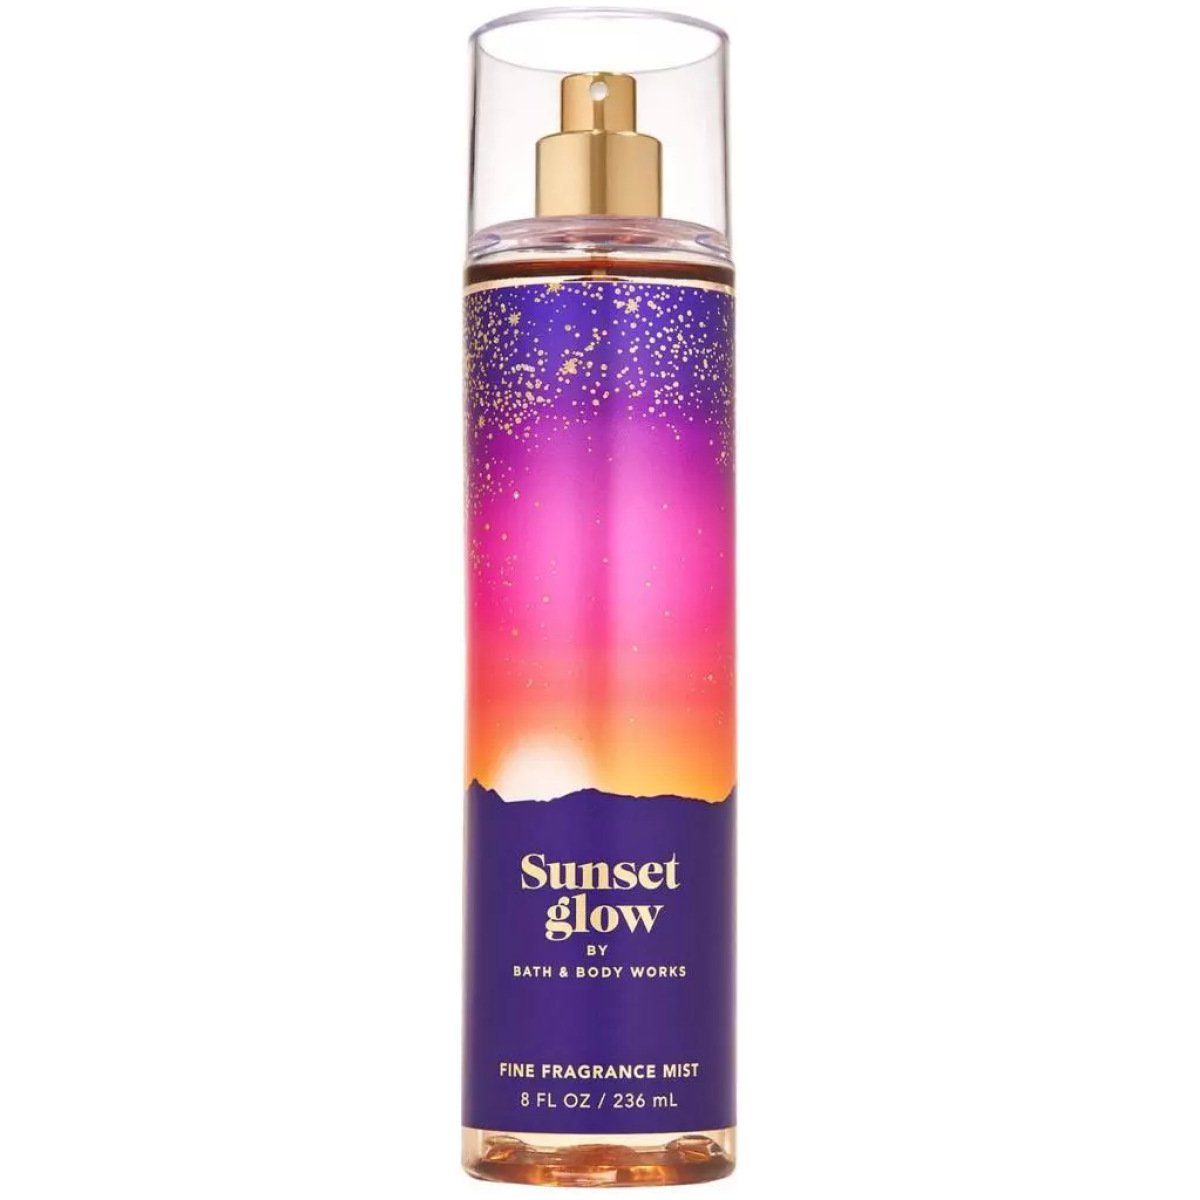 Bath & Body Works Sunset Glow Fine Fragrance Body Mist 236Ml